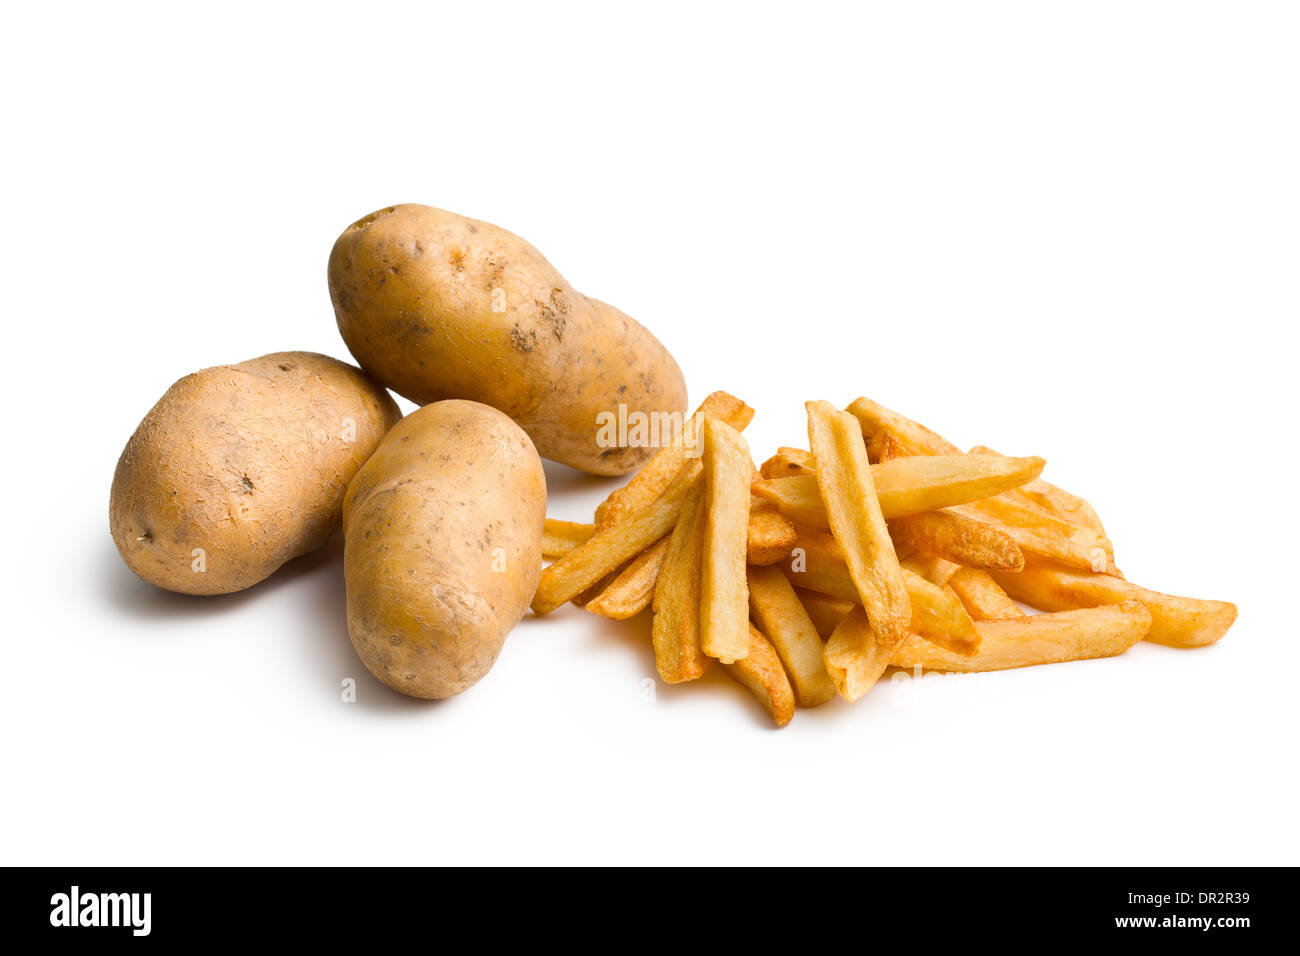 Les pommes de terre à frites sur fond blanc Banque D'Images